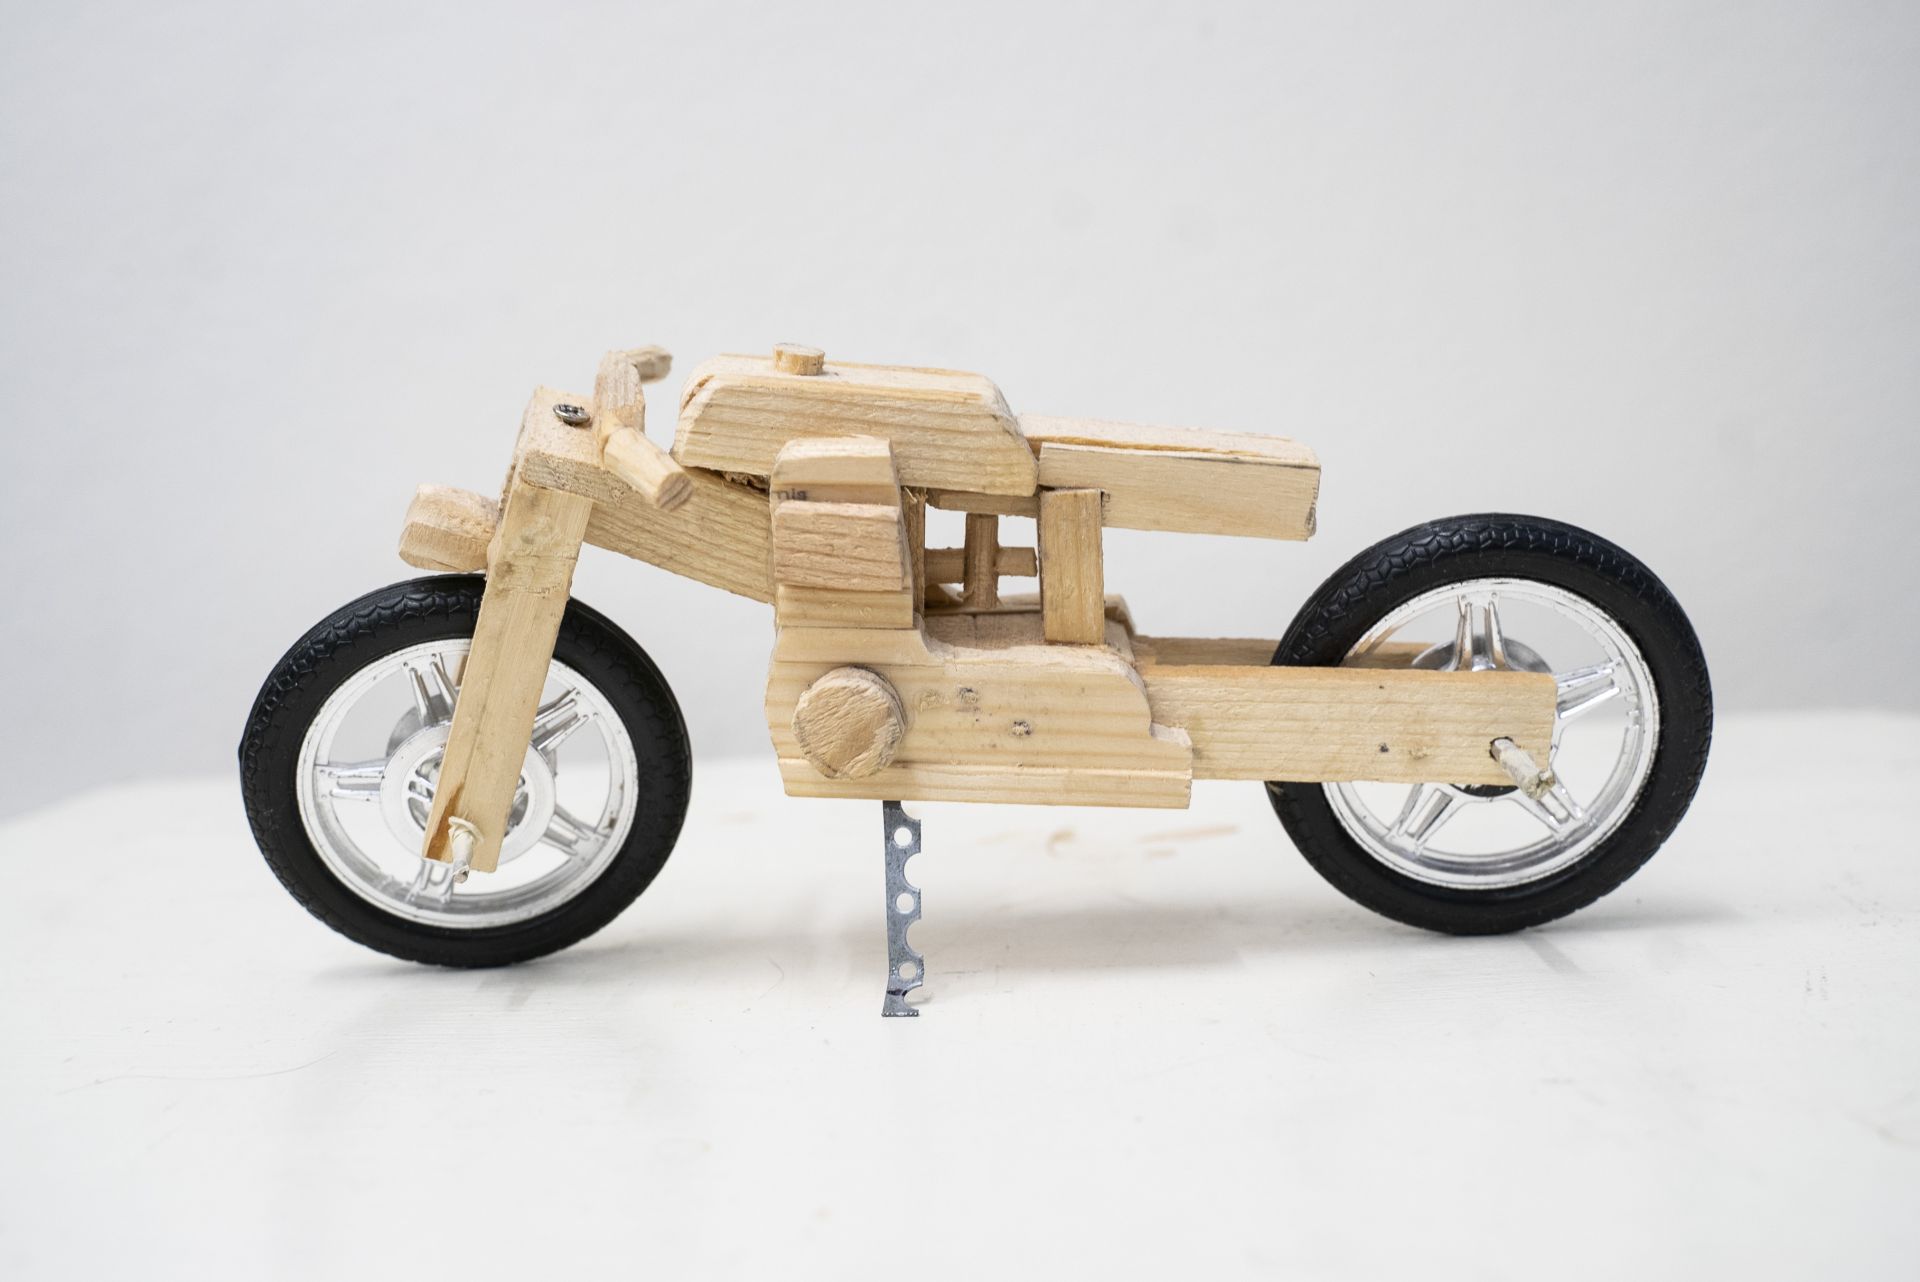 Pienoismalli Harley Davidson-moottoripyörästä. Pienoismalli on tehty puusta ja metallisista osista kuten pyöristä.